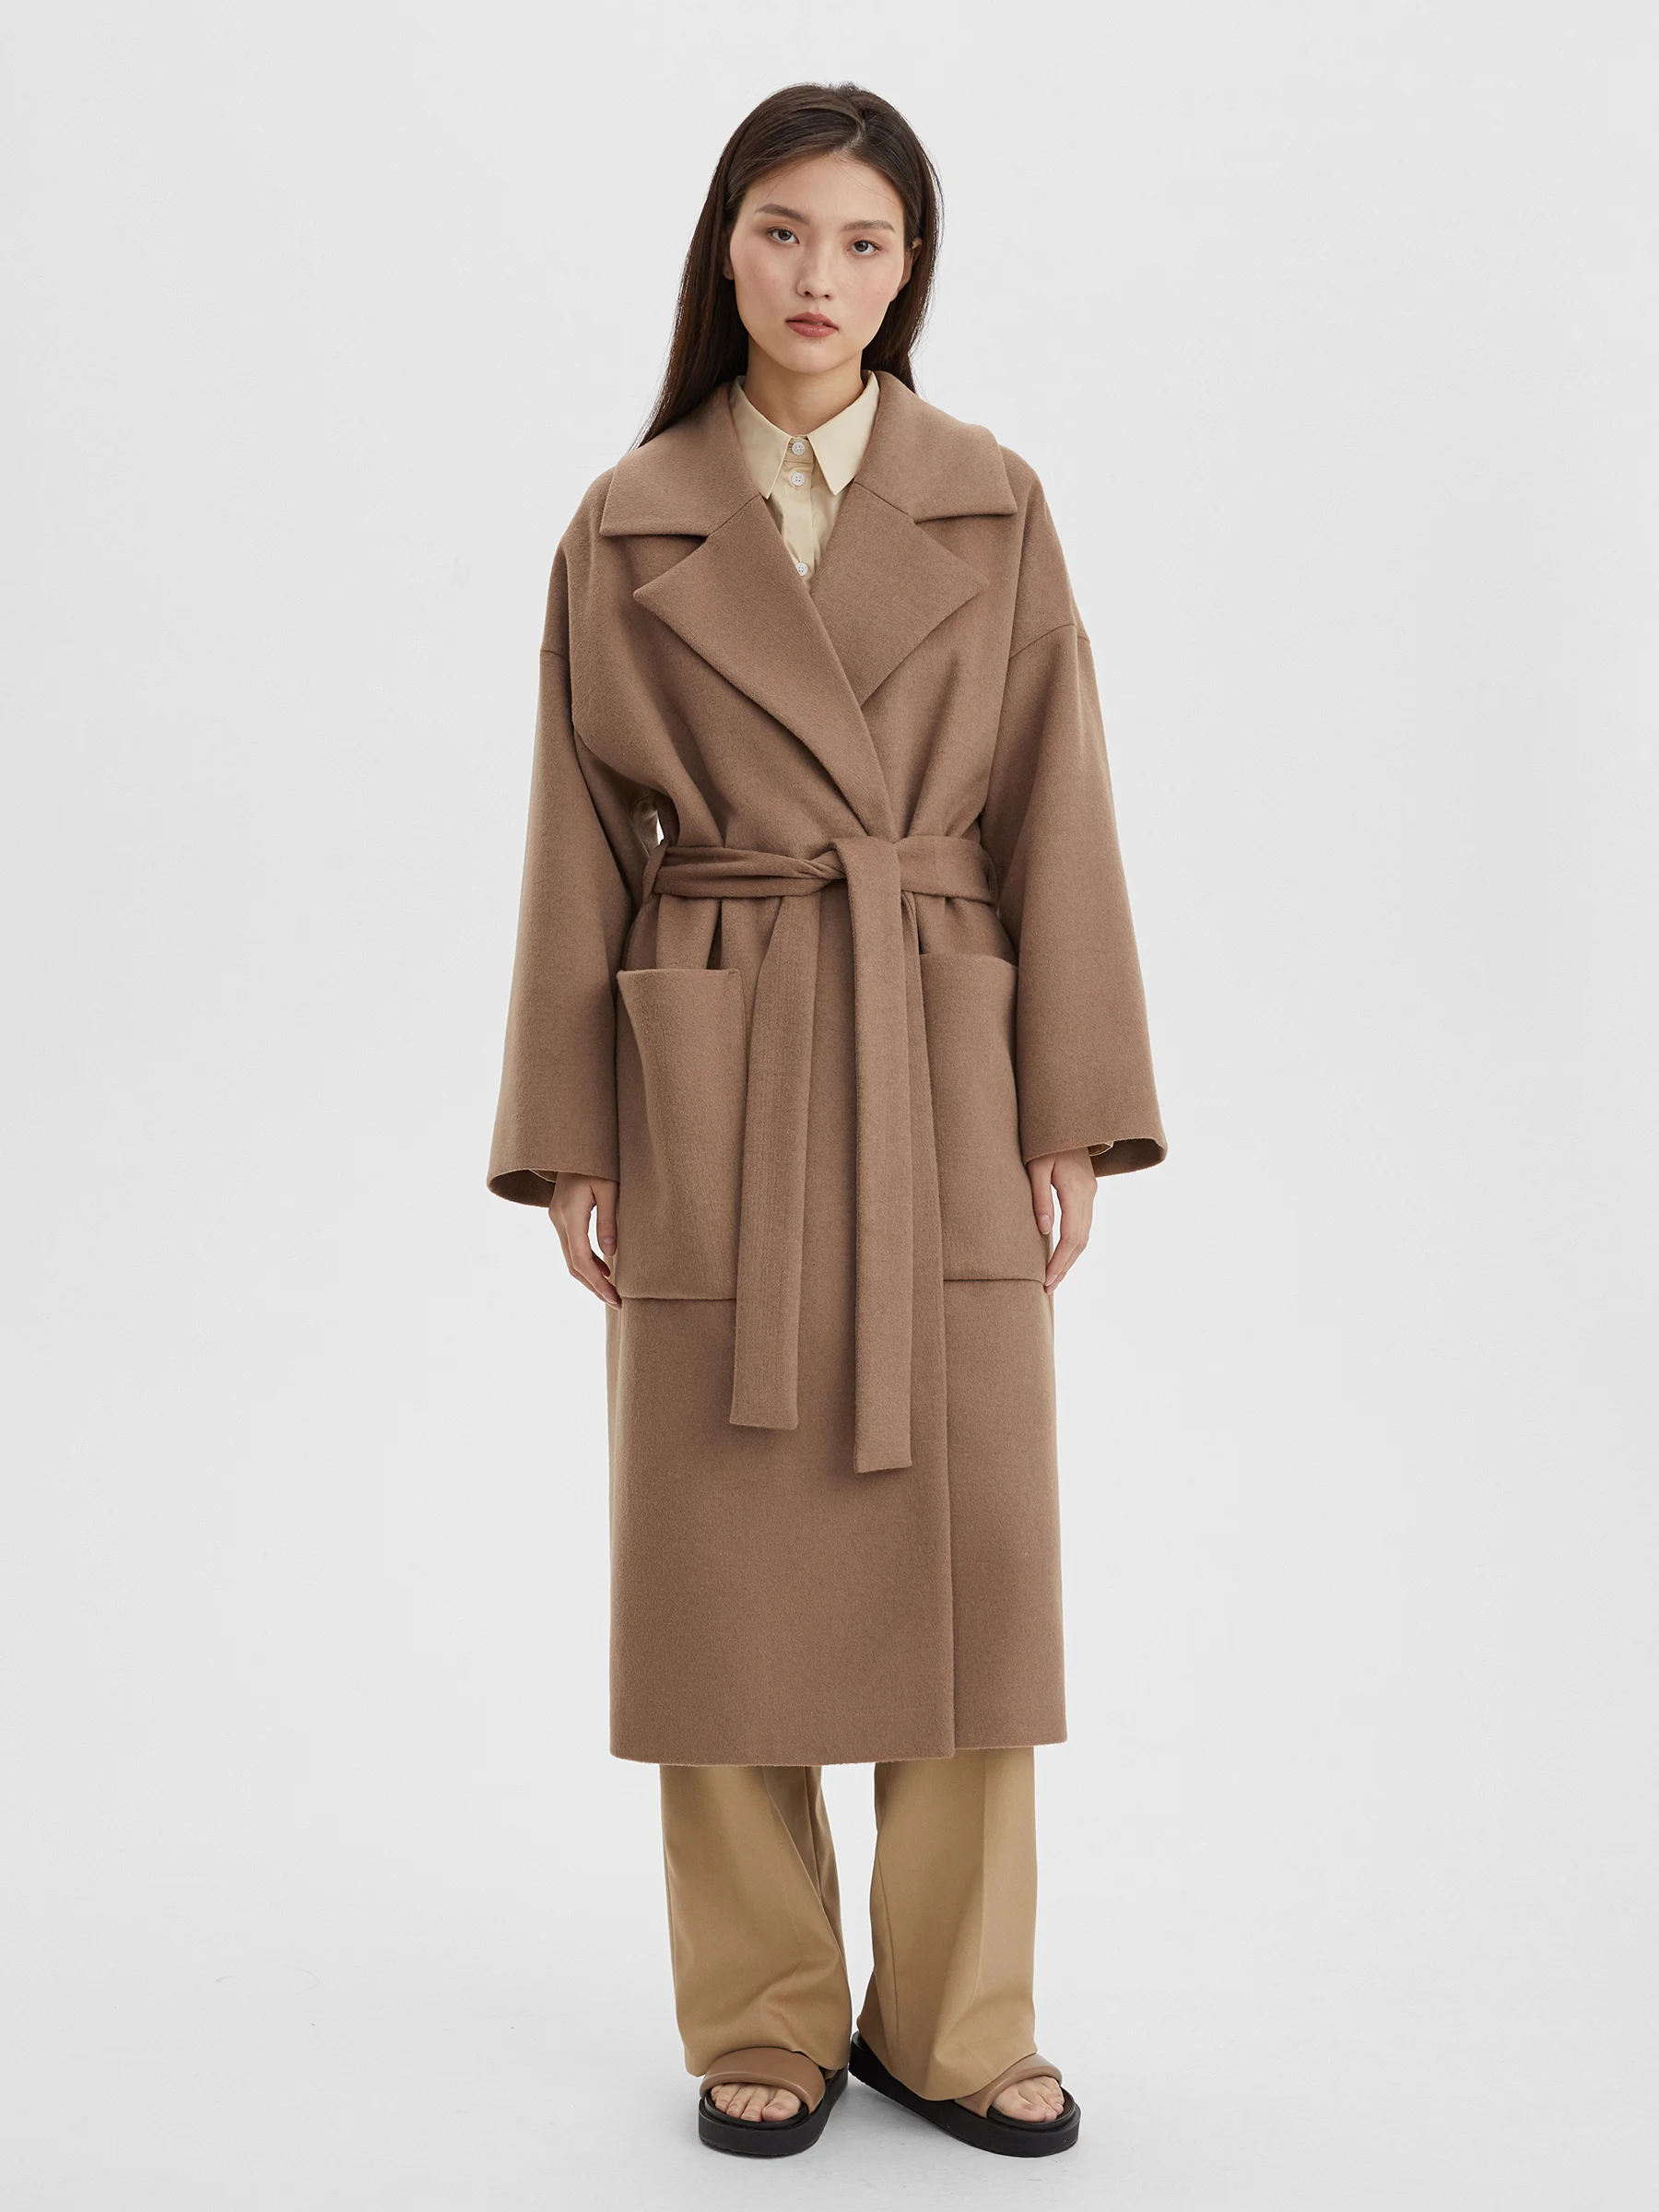 Пальто женское длинное с объемными карманами и поясом, цвет – бежевый